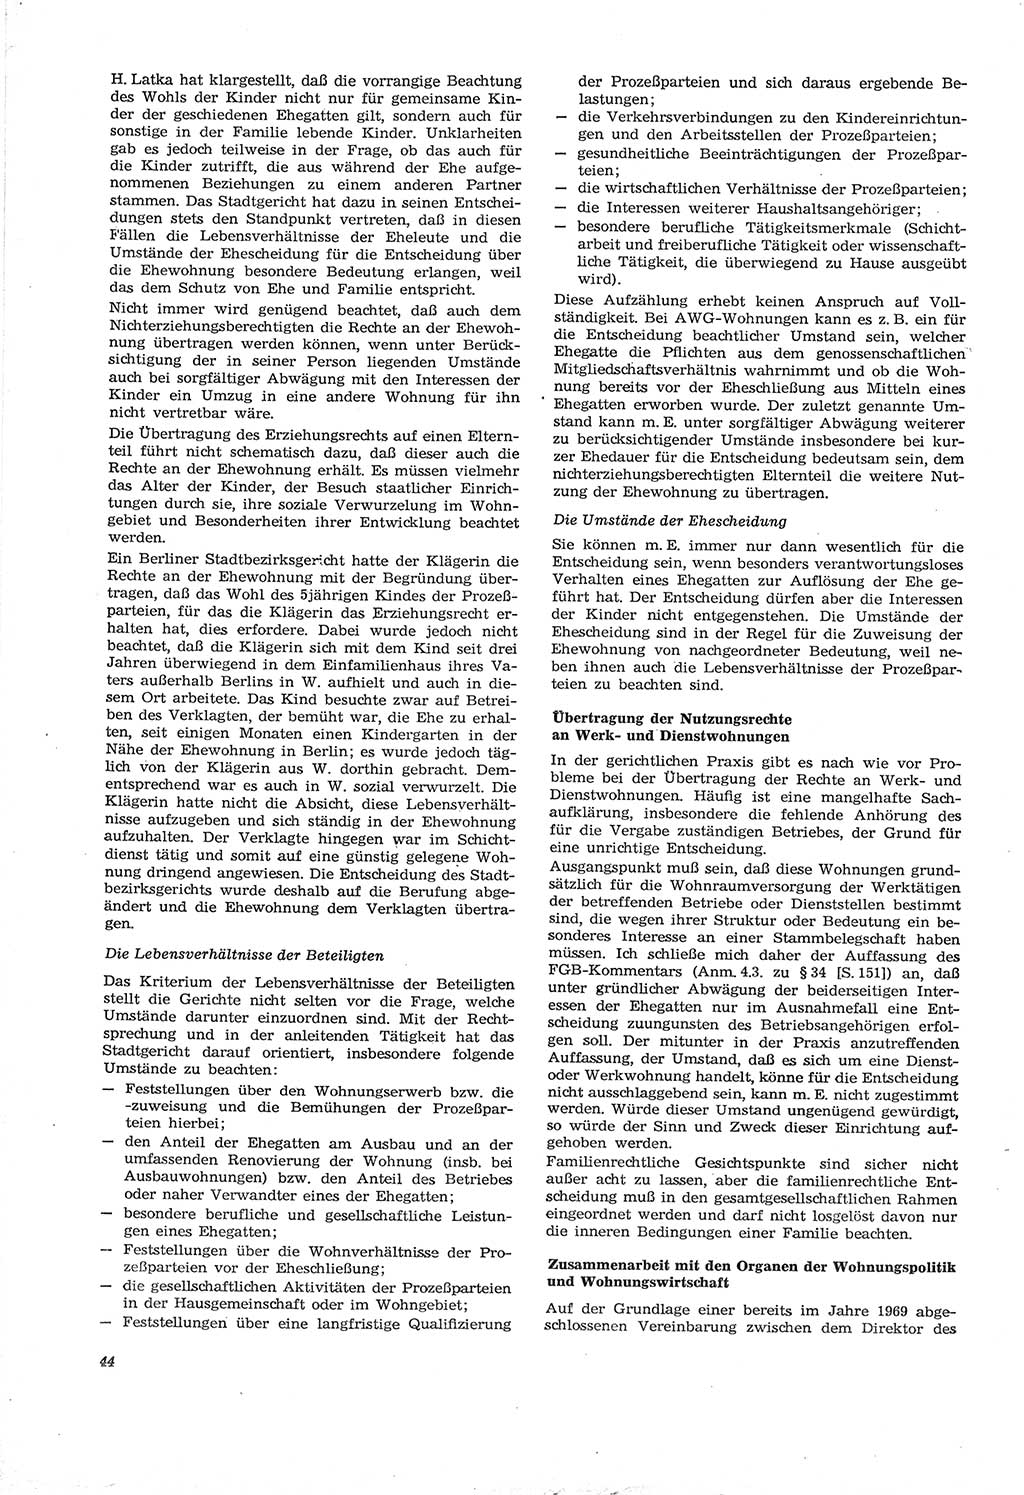 Neue Justiz (NJ), Zeitschrift für Recht und Rechtswissenschaft [Deutsche Demokratische Republik (DDR)], 30. Jahrgang 1976, Seite 44 (NJ DDR 1976, S. 44)